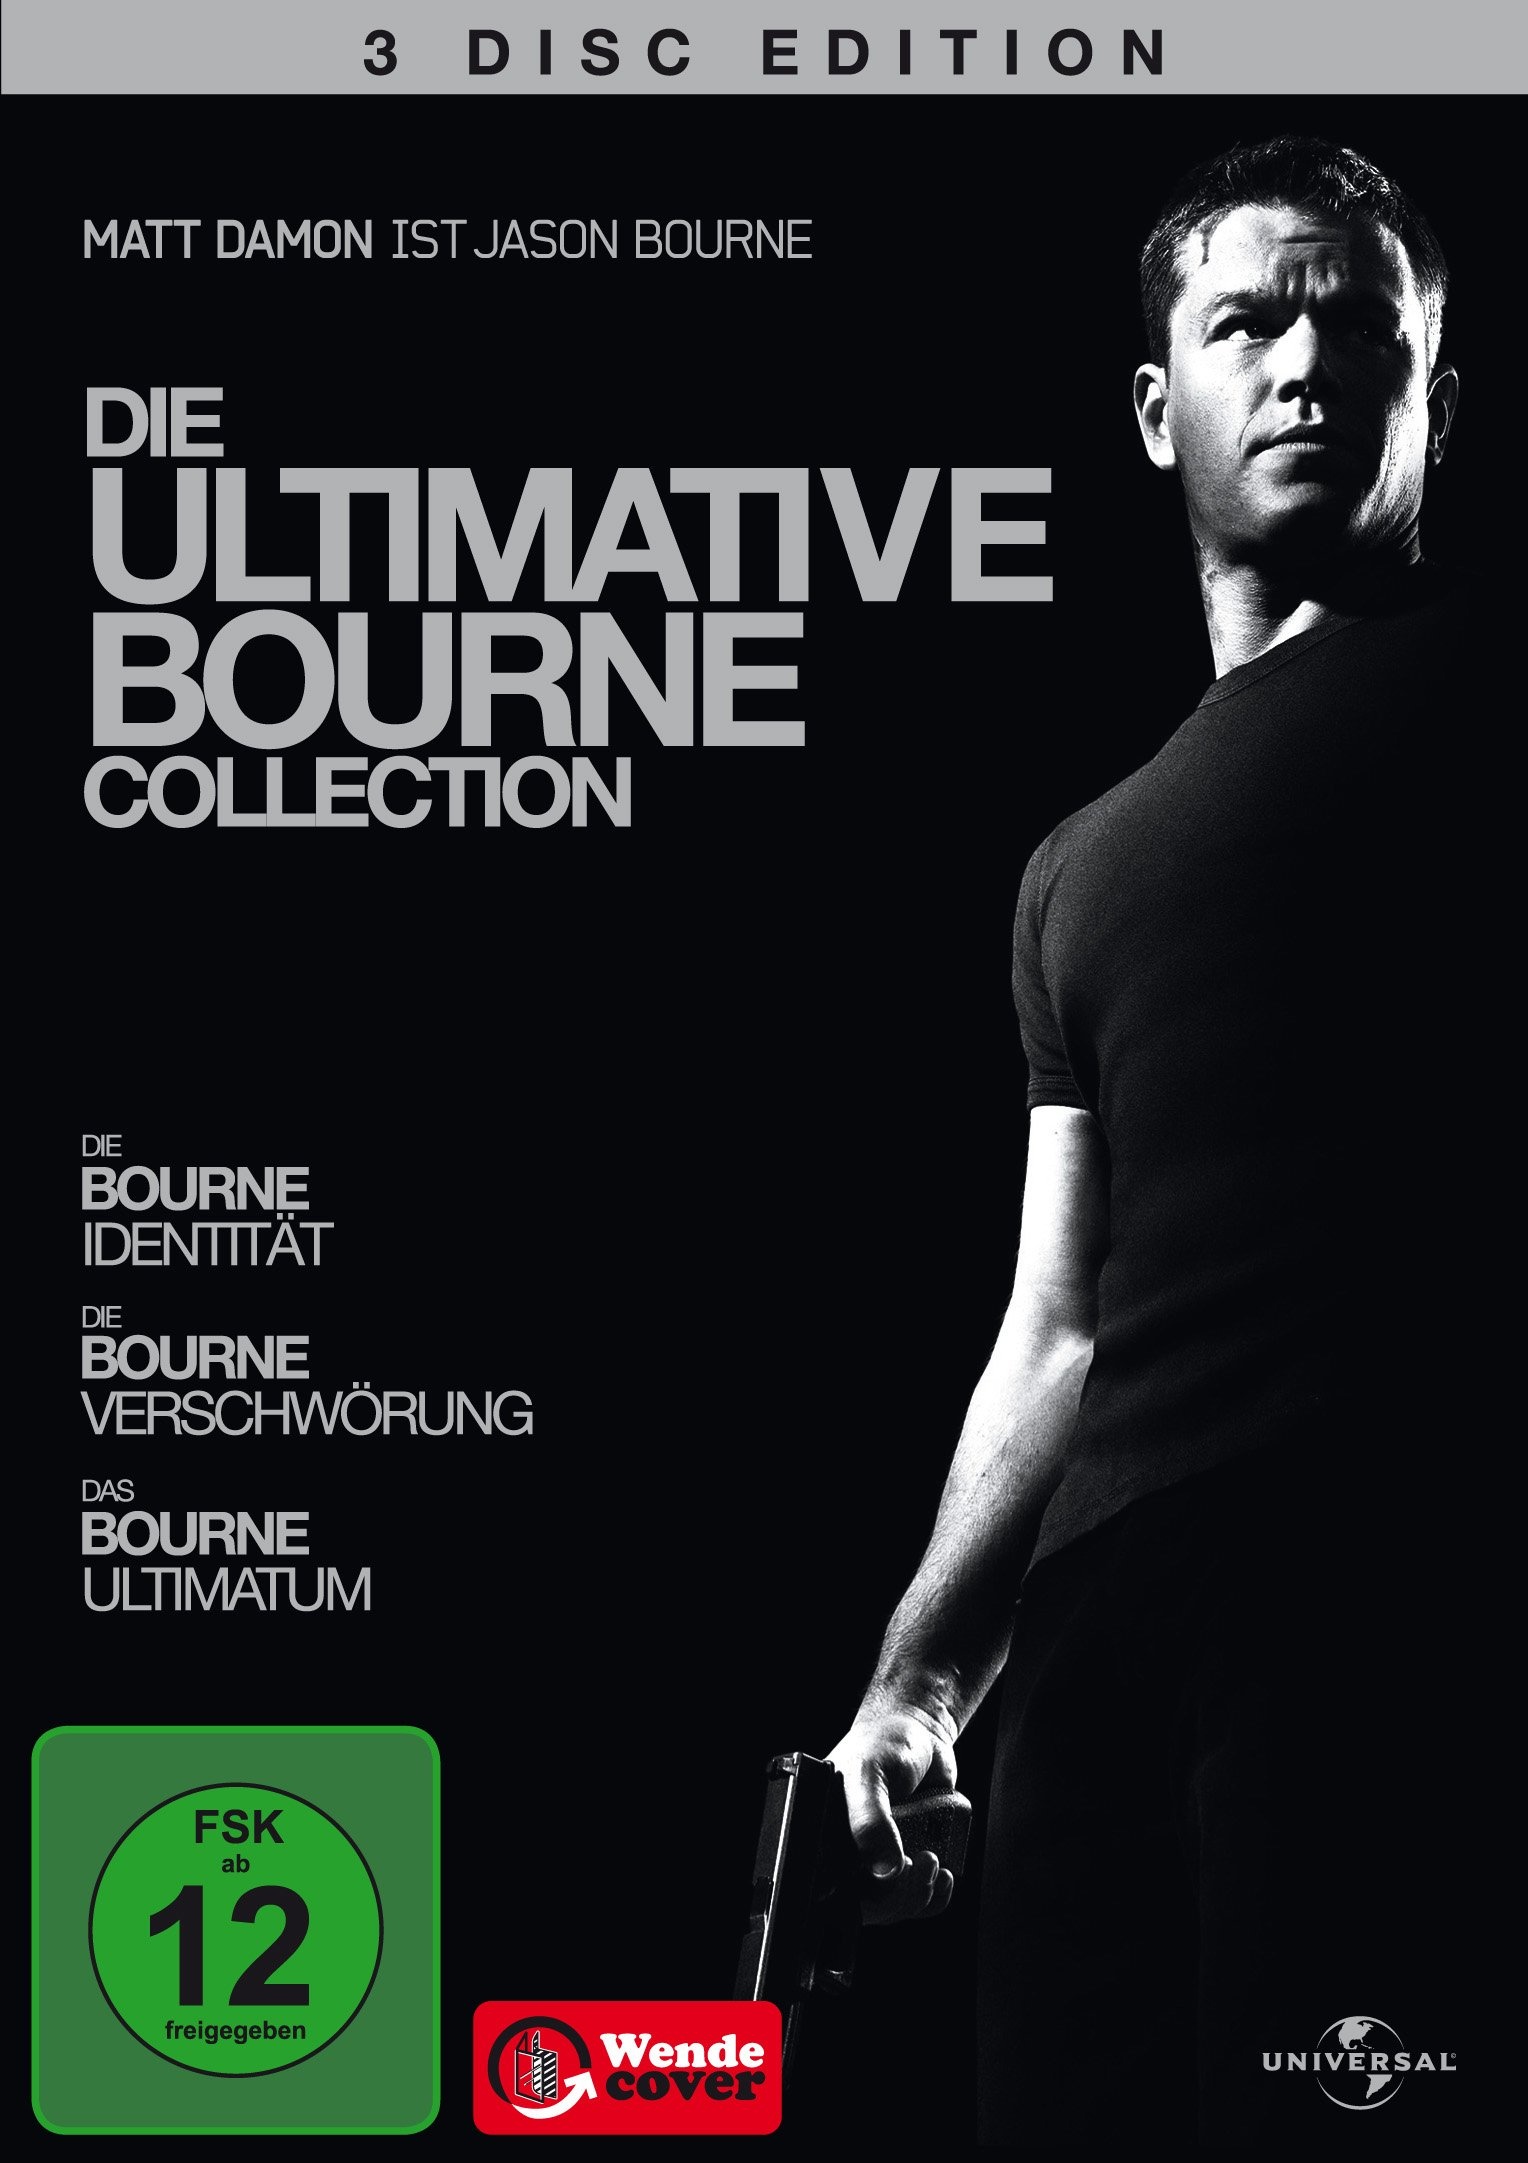 Die ultimative Bourne Collection [3 DVDs] (Neu differenzbesteuert)